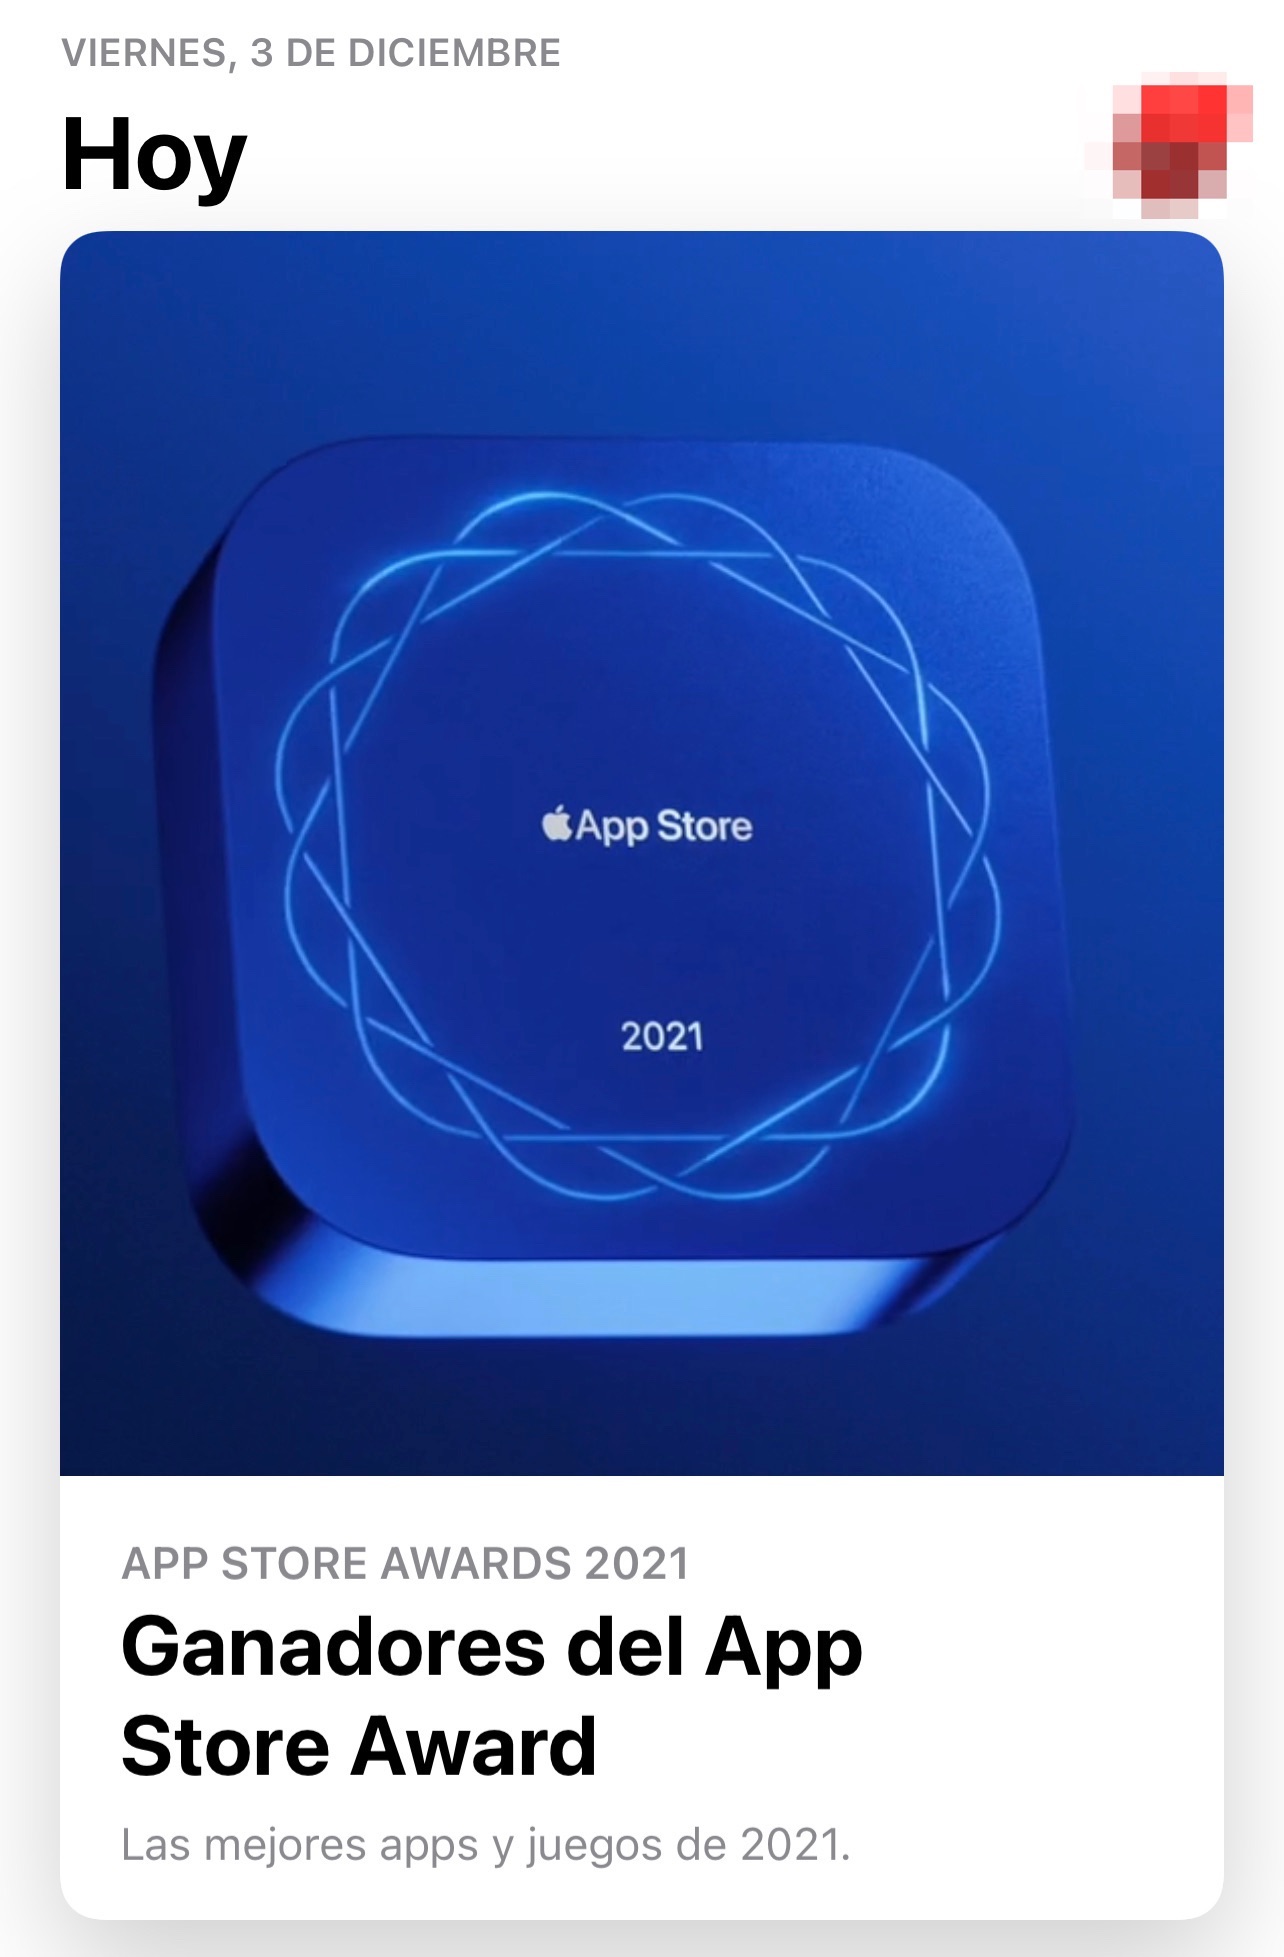 Apps más descargadas de la App Store en el año 2021